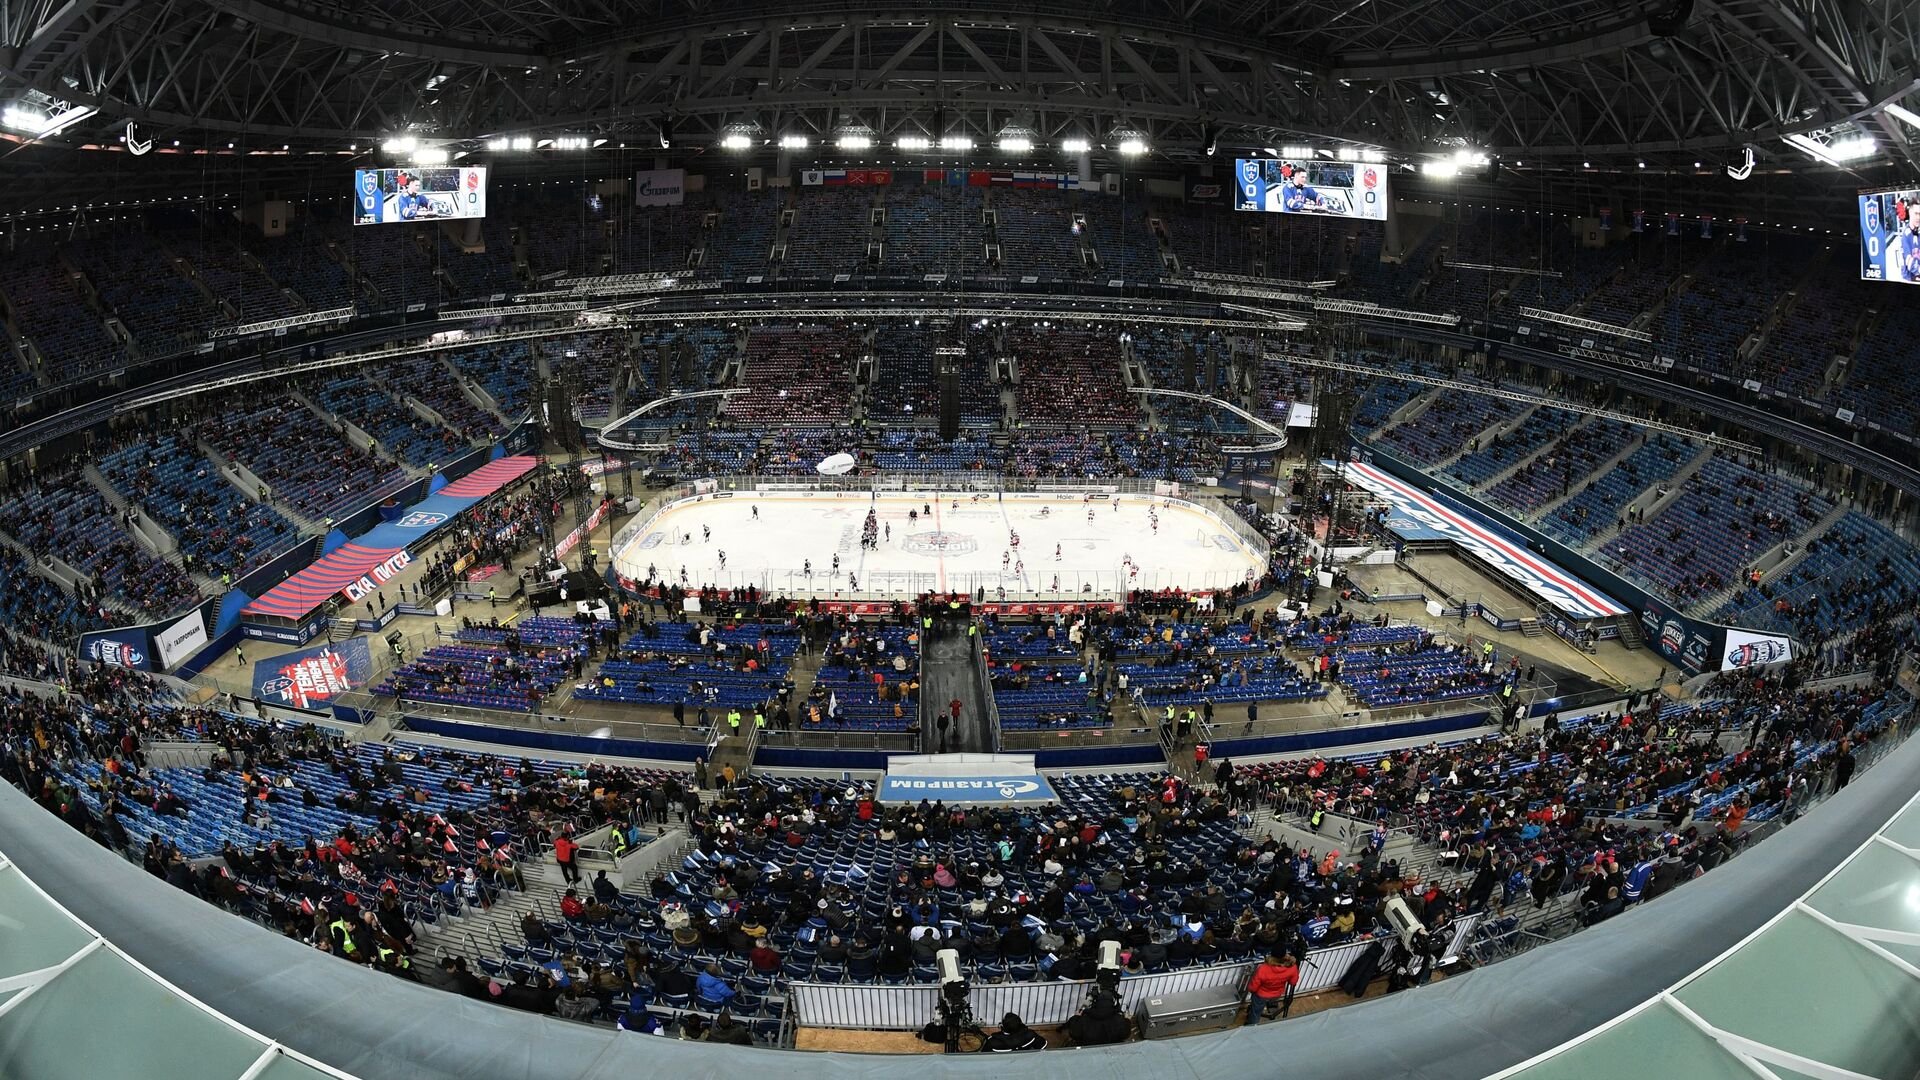 Стадиона ска арена. Хоккейная Арена Санкт-Петербург. Хоккейная Арена СКА Санкт-Петербург. Стадион хк СКА. Стадион СКА Арена хоккей.